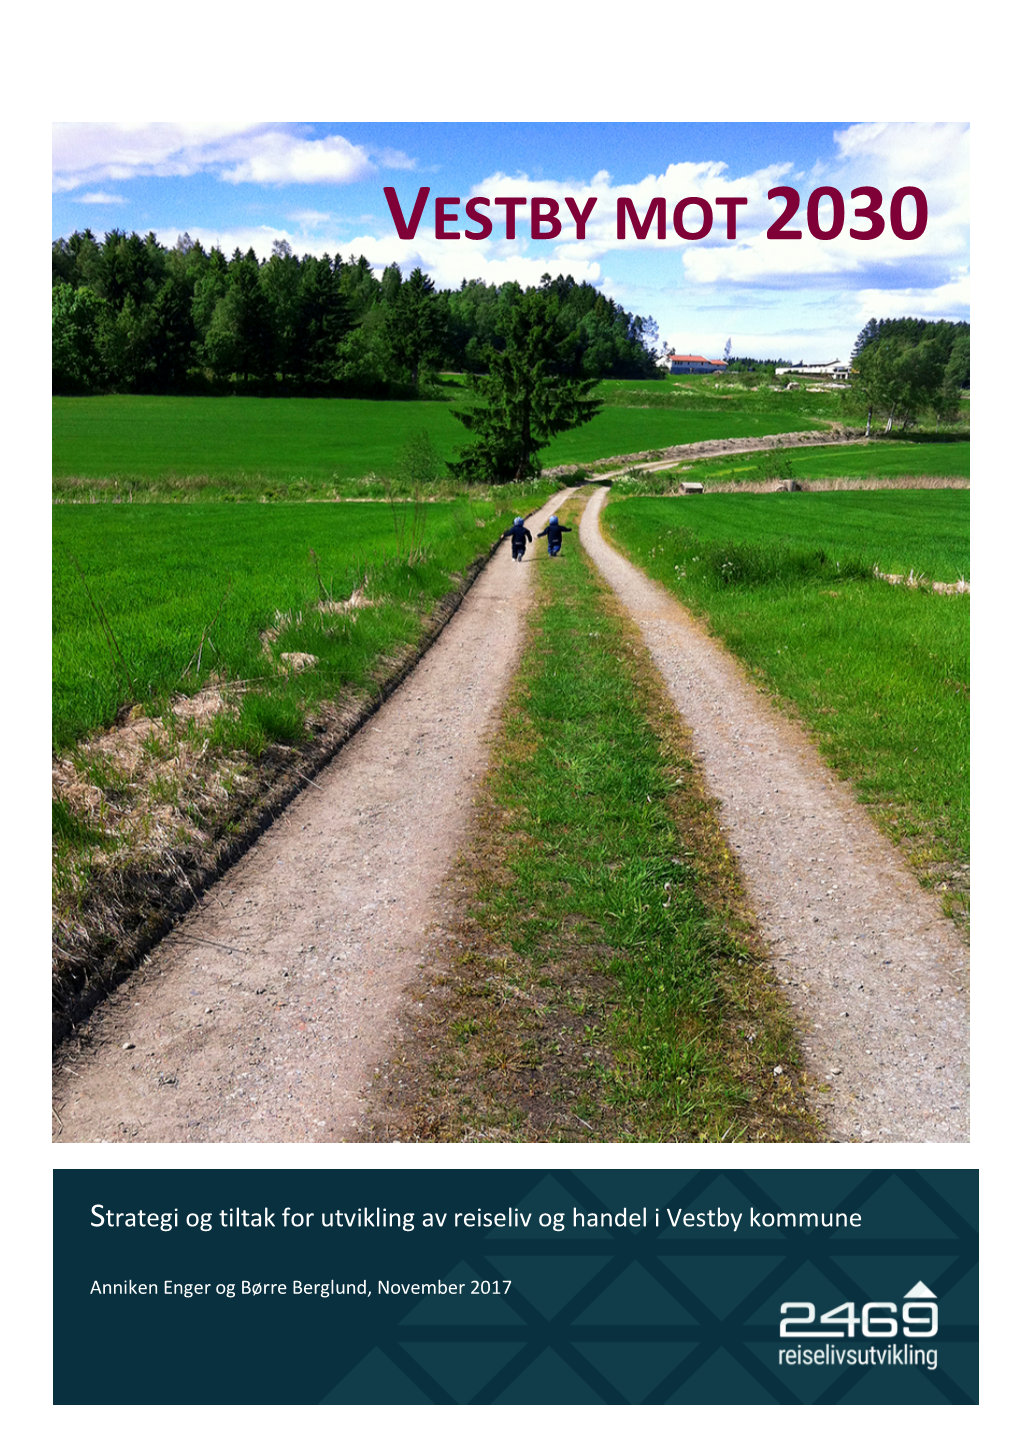 Vestby Mot 2030, Strategi Og Tiltak Reiseliv Og Handel. Versjon